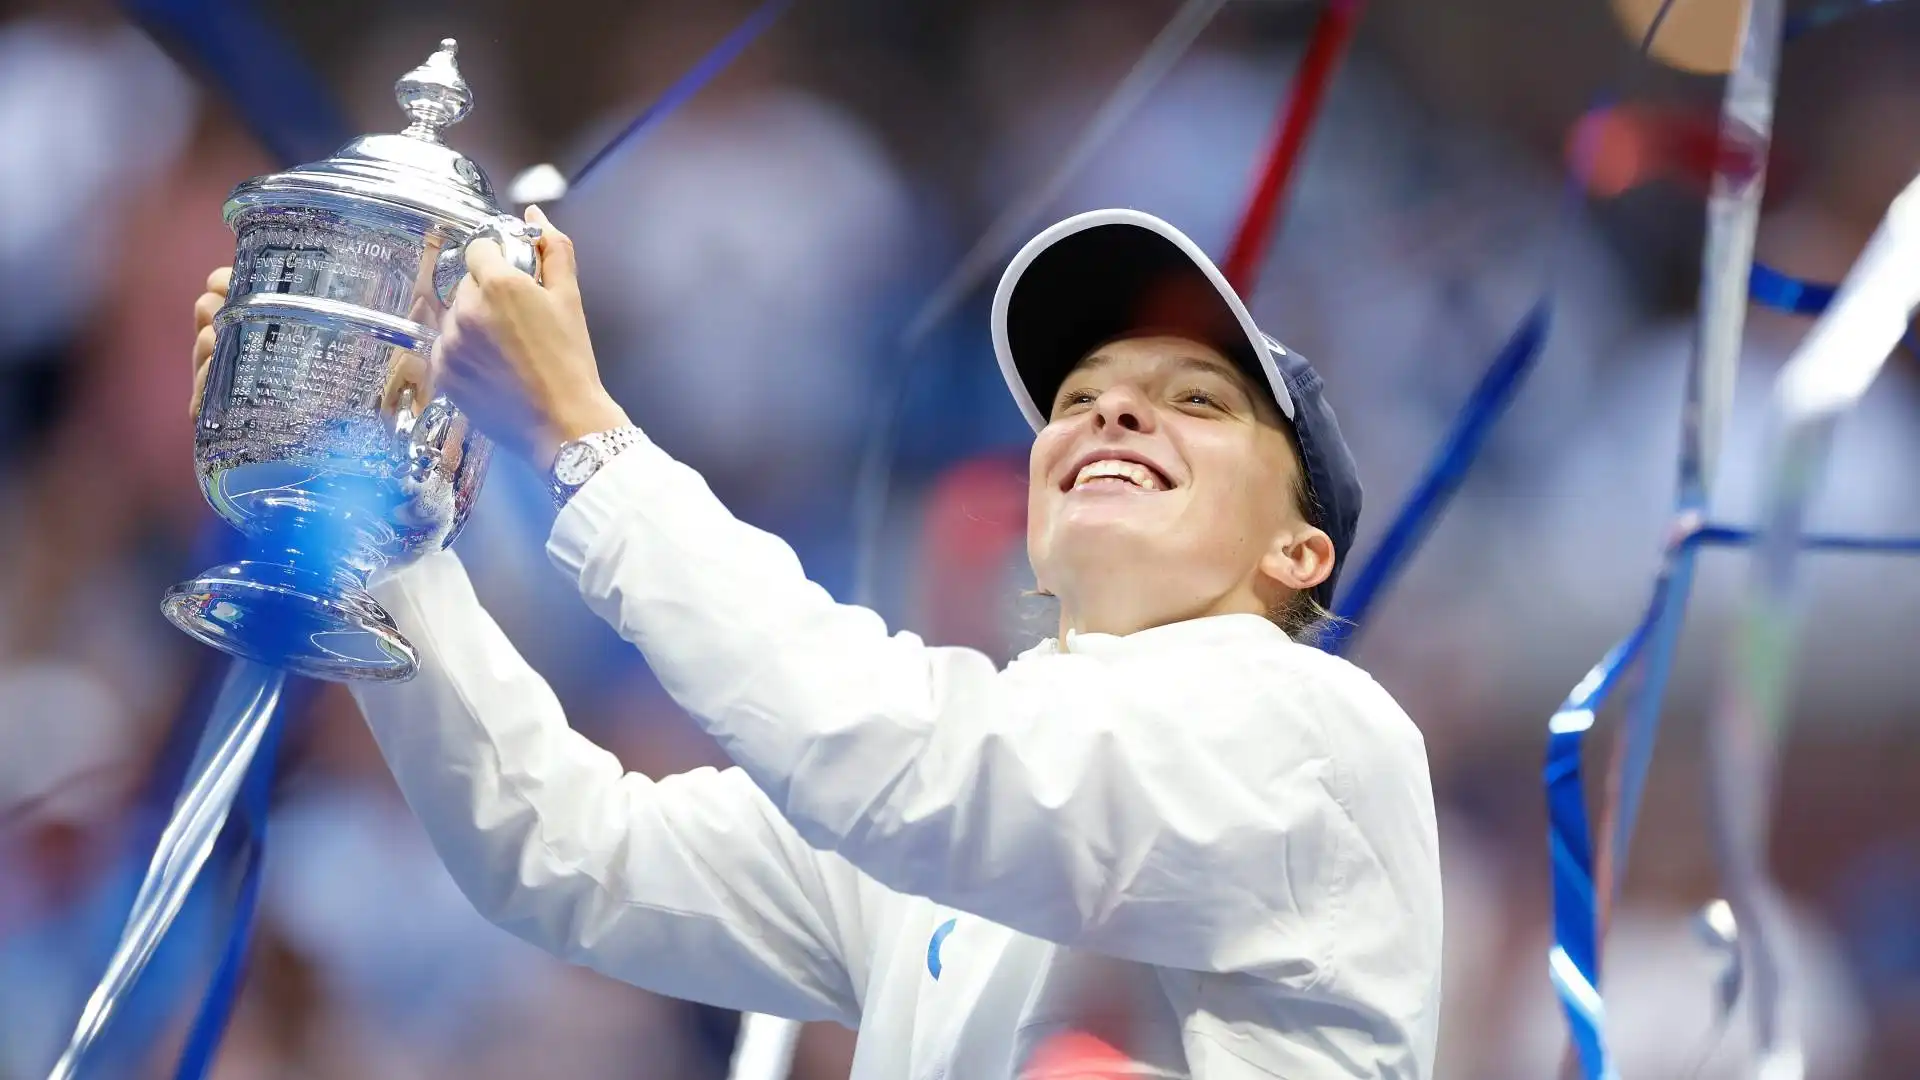 Tuttavia, a Parigi all'ultimo appuntamento Slam del 2020, consegue il miglior risultato da inizio carriera vincendo il Roland Garros